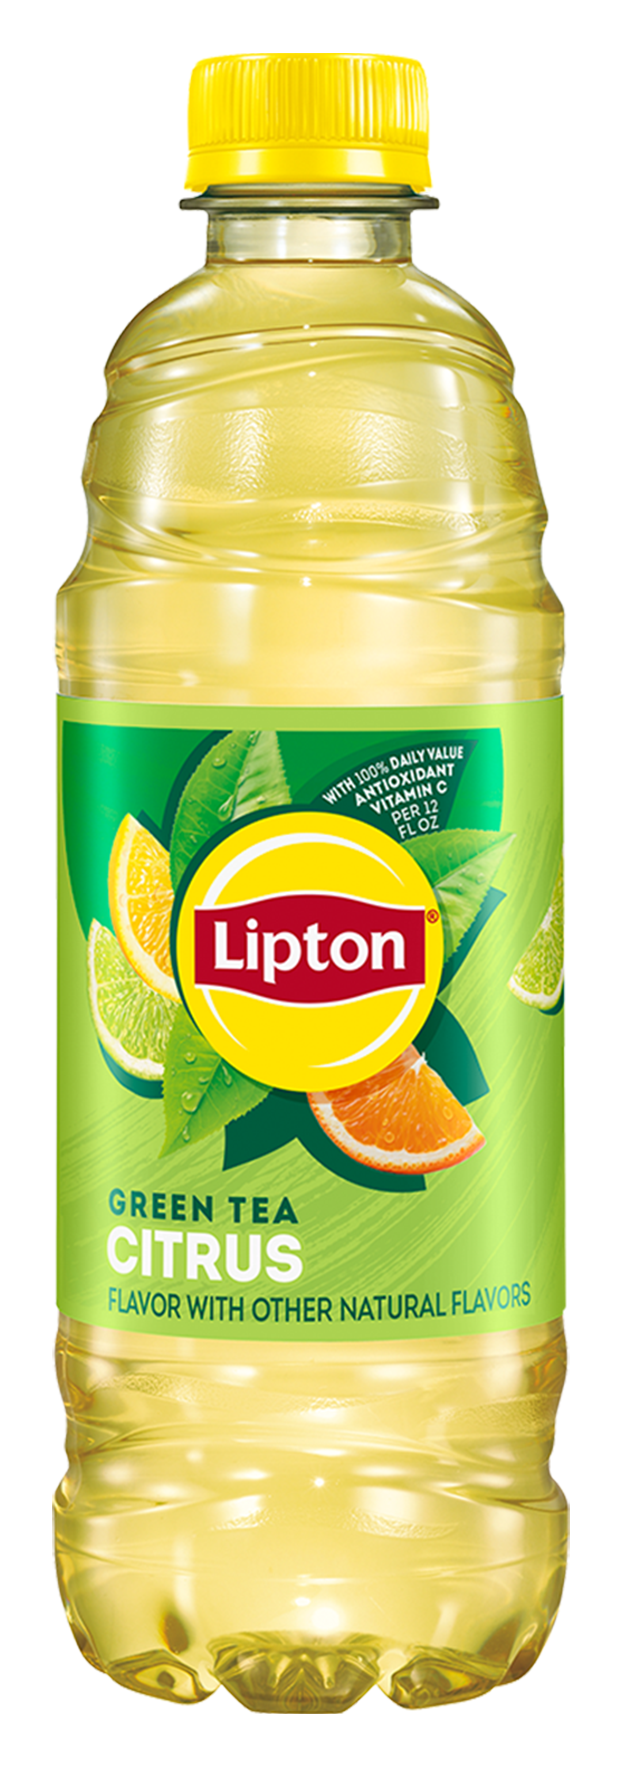 Lipton Iced Tea green citrus header bottle